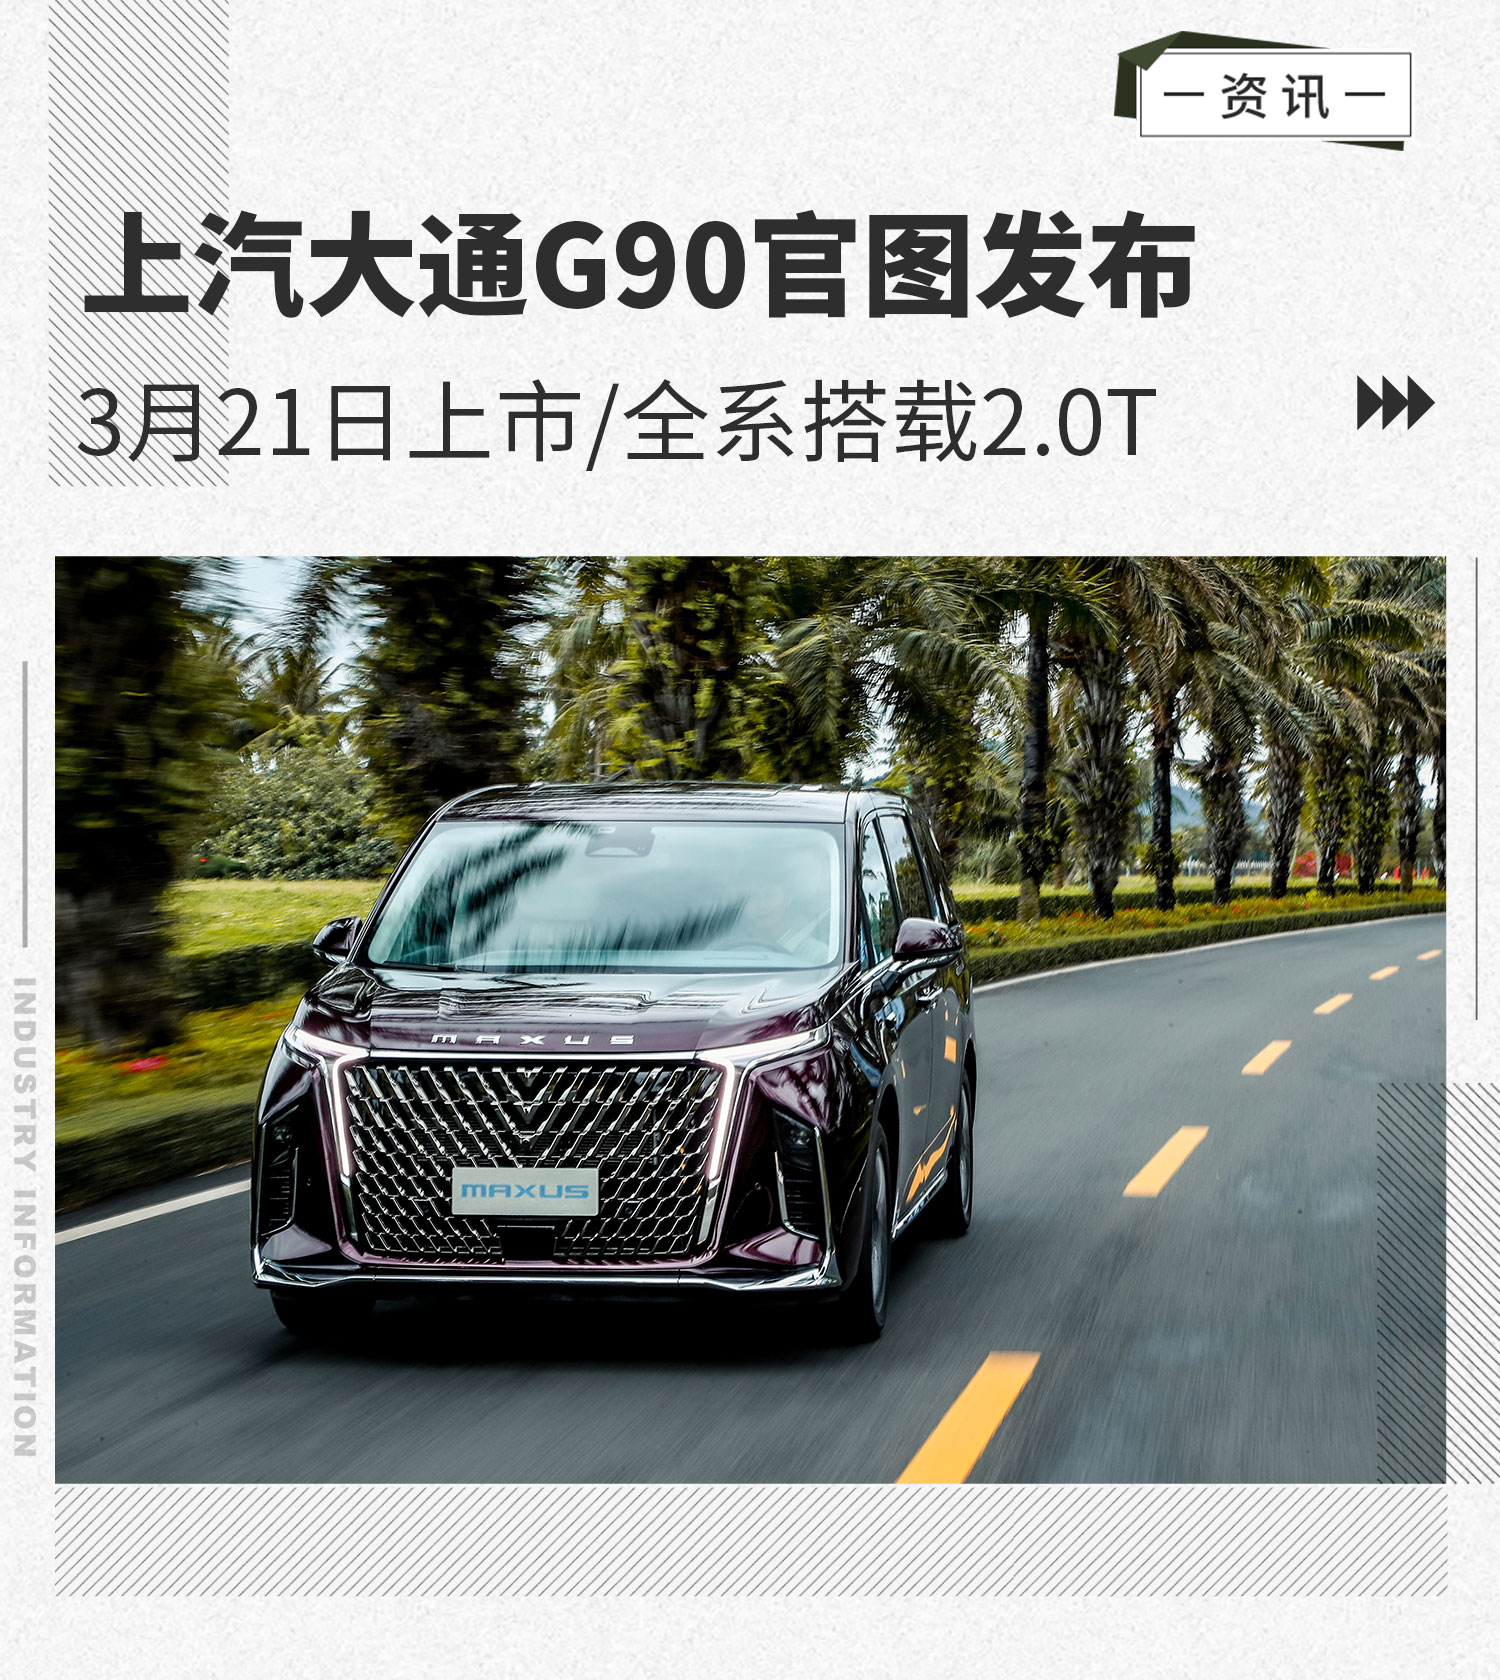 3月21日上市/全系搭载2.0T 上汽大通G90官图发布